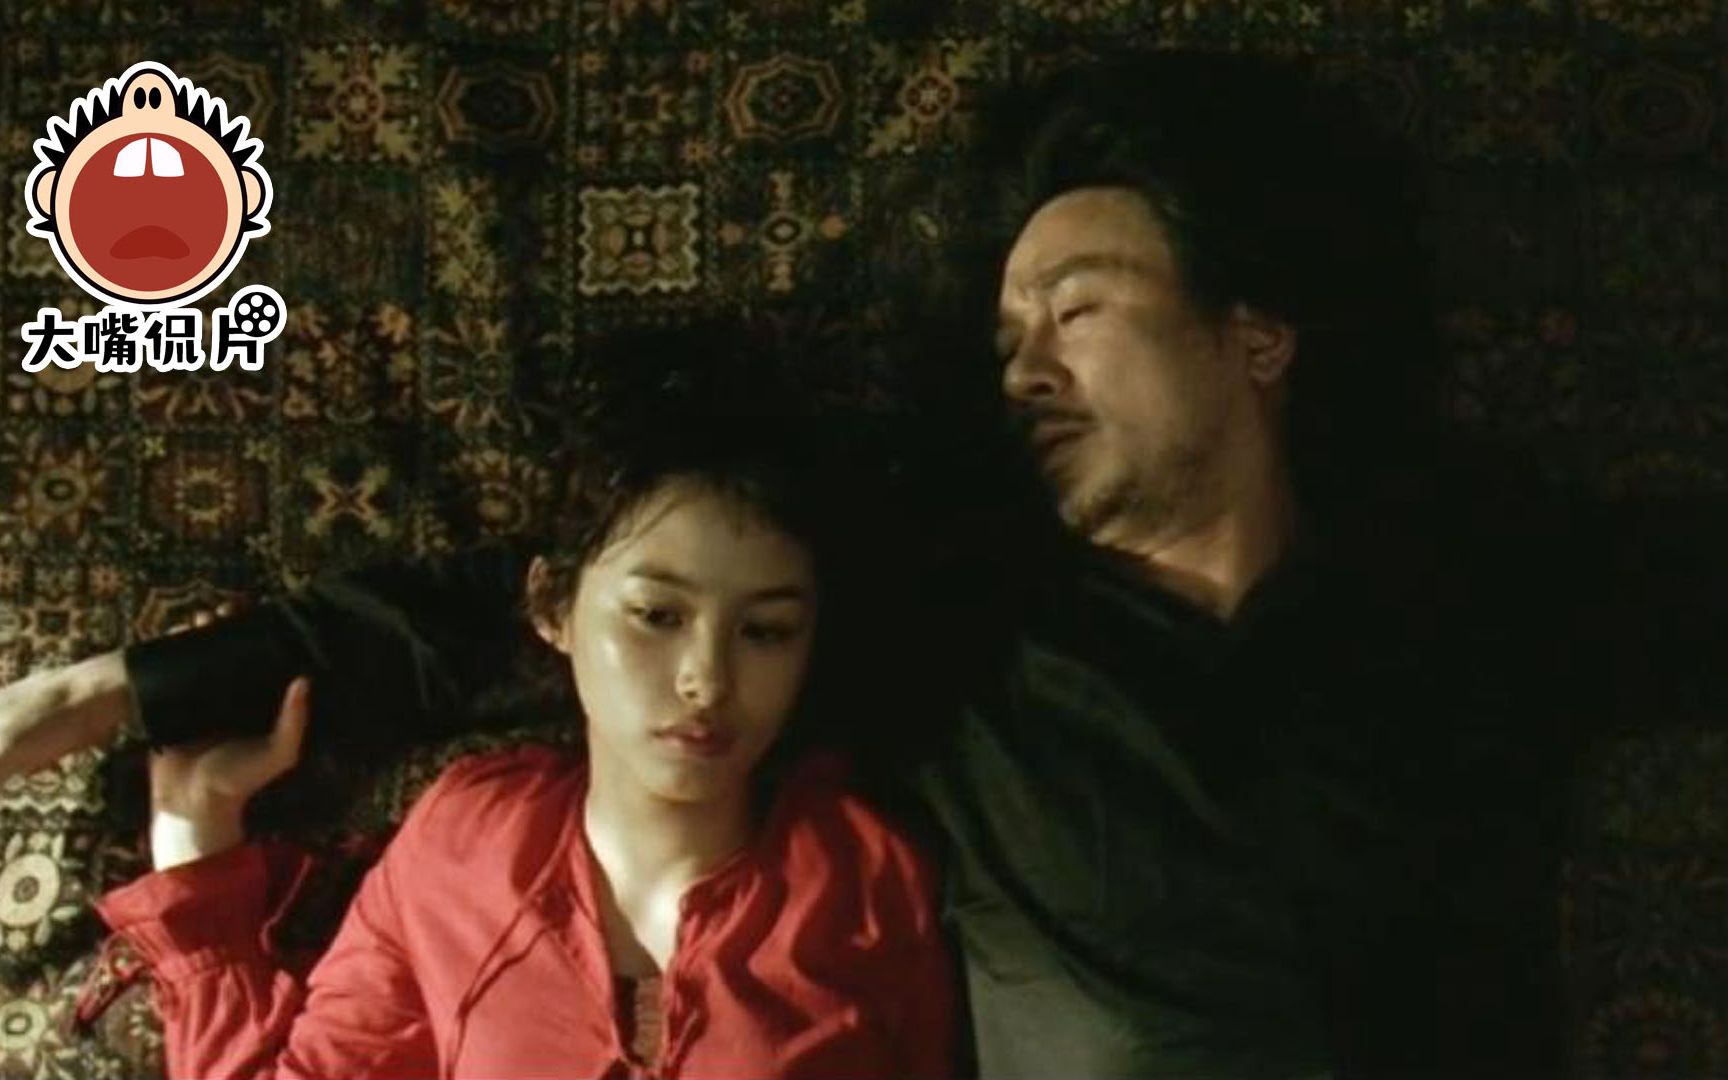 喷子请闭嘴系列，韩国最好的复仇电影，大叔因口无遮拦被囚禁15年